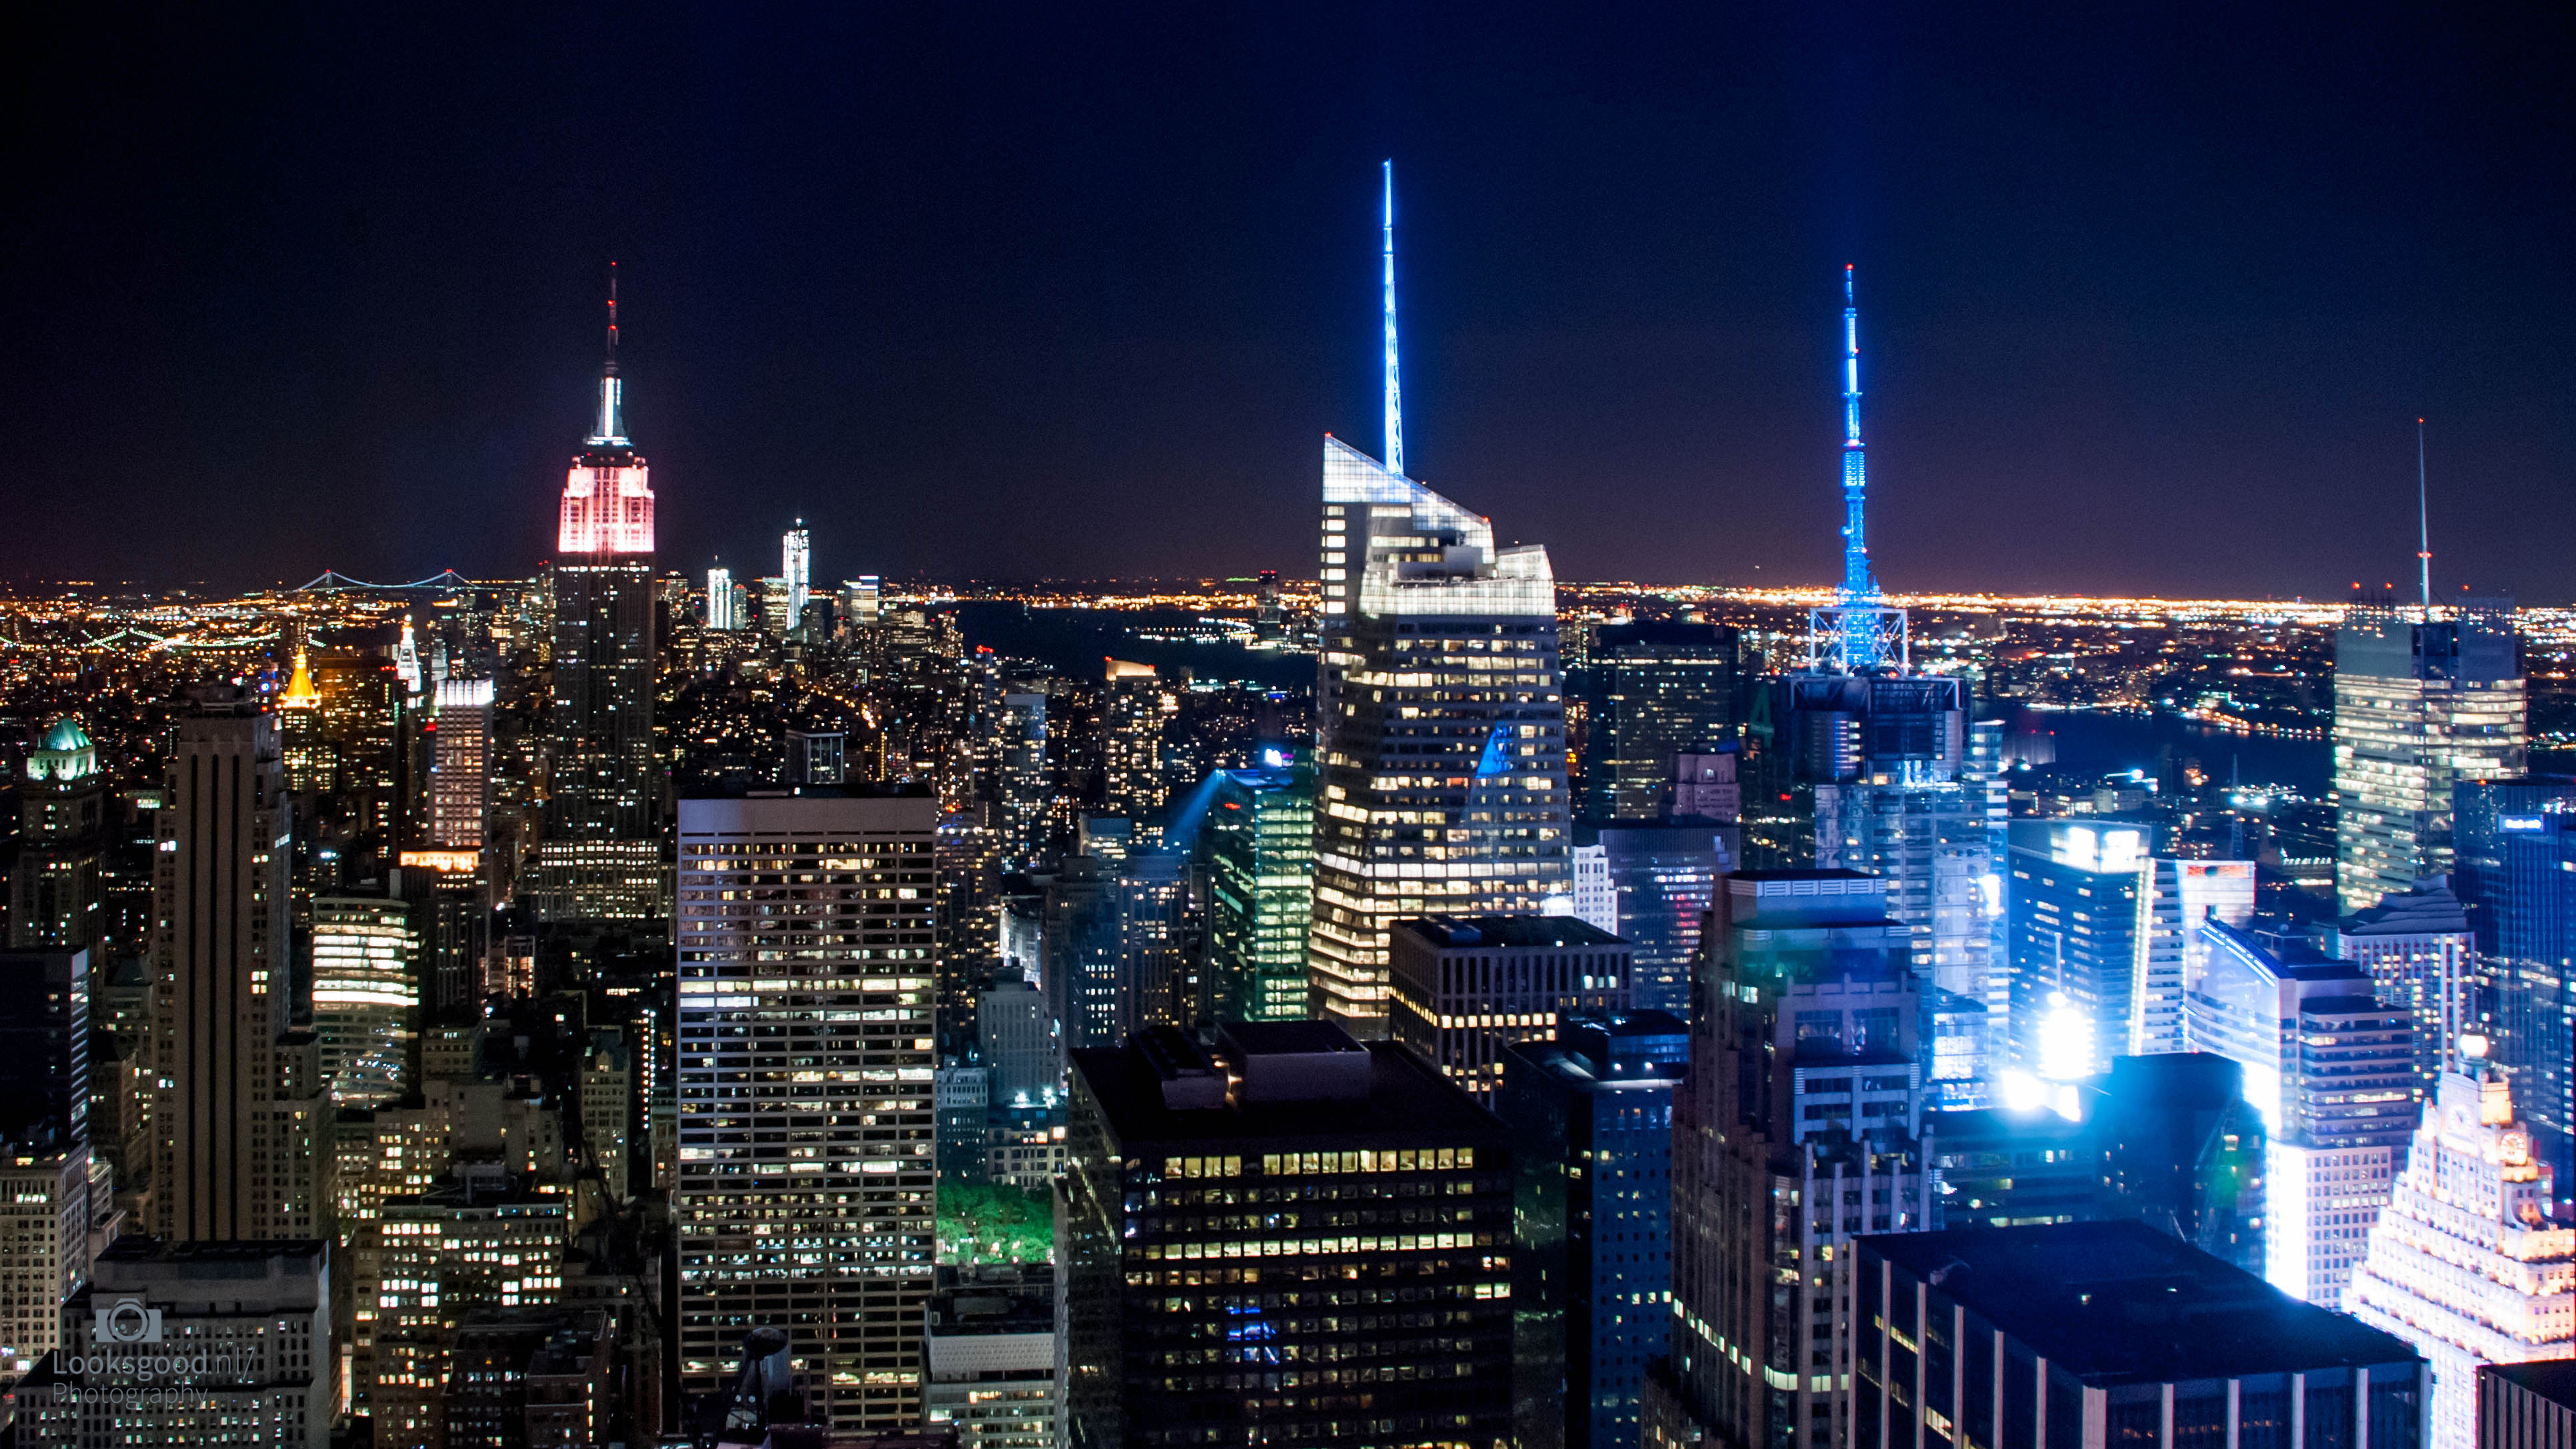 Ngắm nhìn toàn bộ sự lung linh của thành phố New York với ảnh nền 4K đẹp nhất. Với đầy đủ các địa điểm nổi tiếng như Trung tâm thương mại World Trade Center hay Cầu Brooklyn, bạn sẽ được tận hưởng vẻ đẹp tuyệt vời của thành phố lớn nhất nước Mỹ.